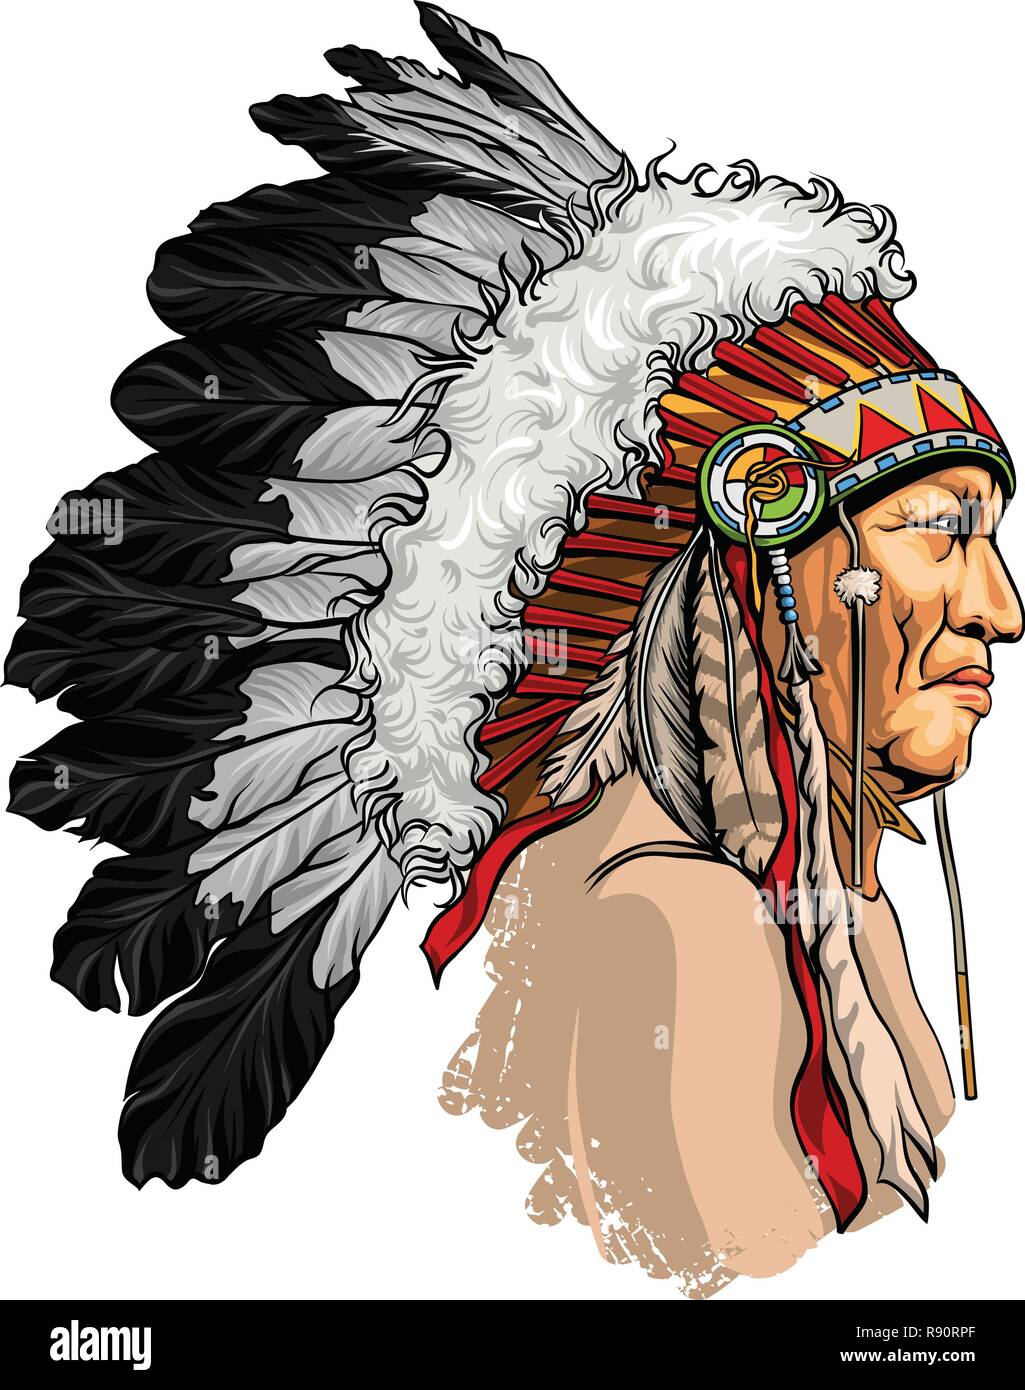 Dessiné à la main, détaillées, Native American Sitting Bull vector portrait. Coiffure de plumes chef indien de la tribu. Illustration de Vecteur